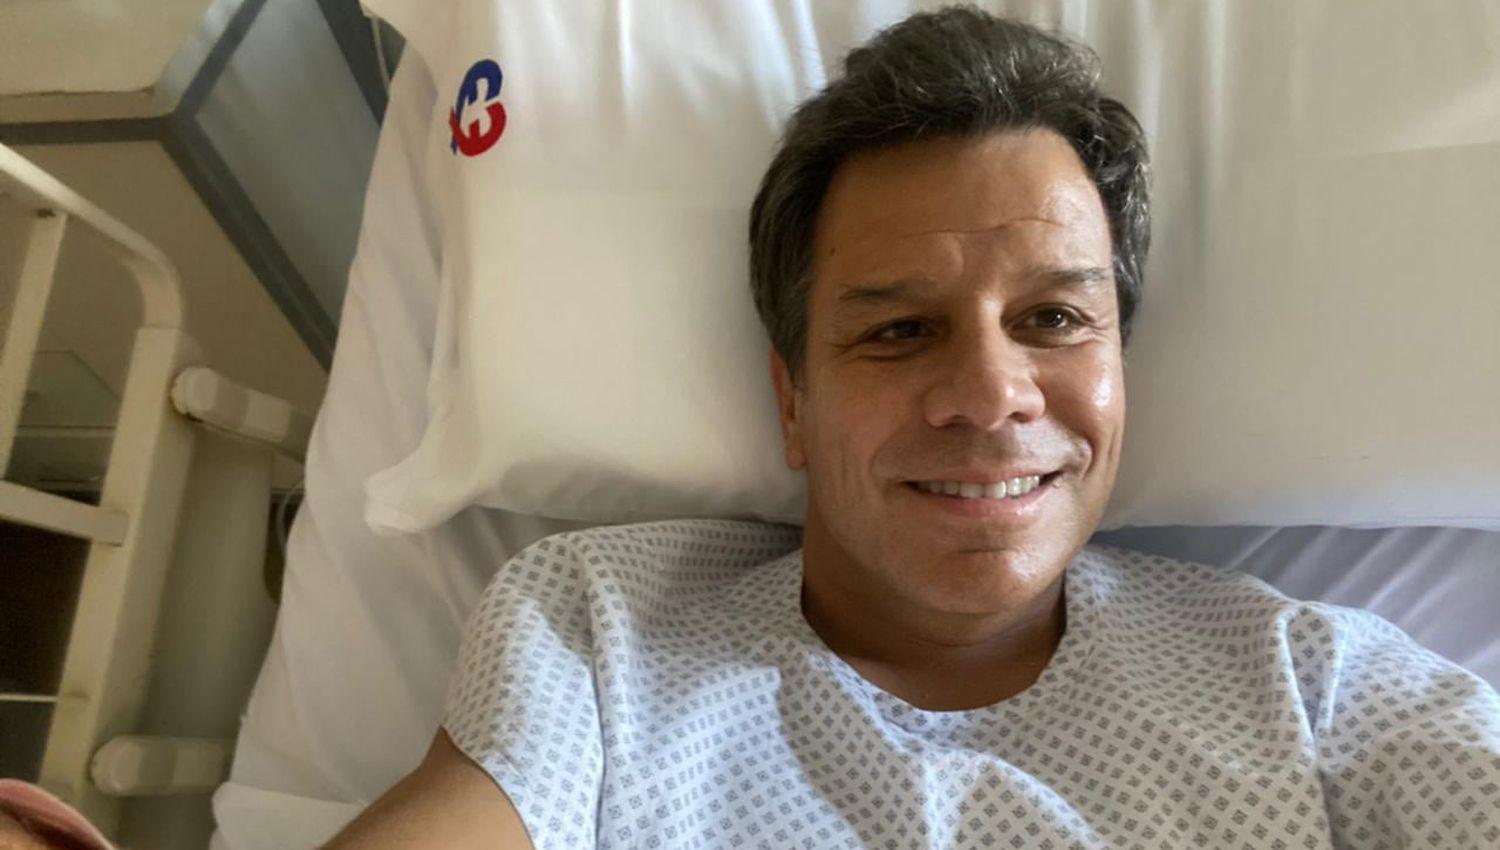 El doctor Facundo Manes internado tras dar positivo de coronavirus